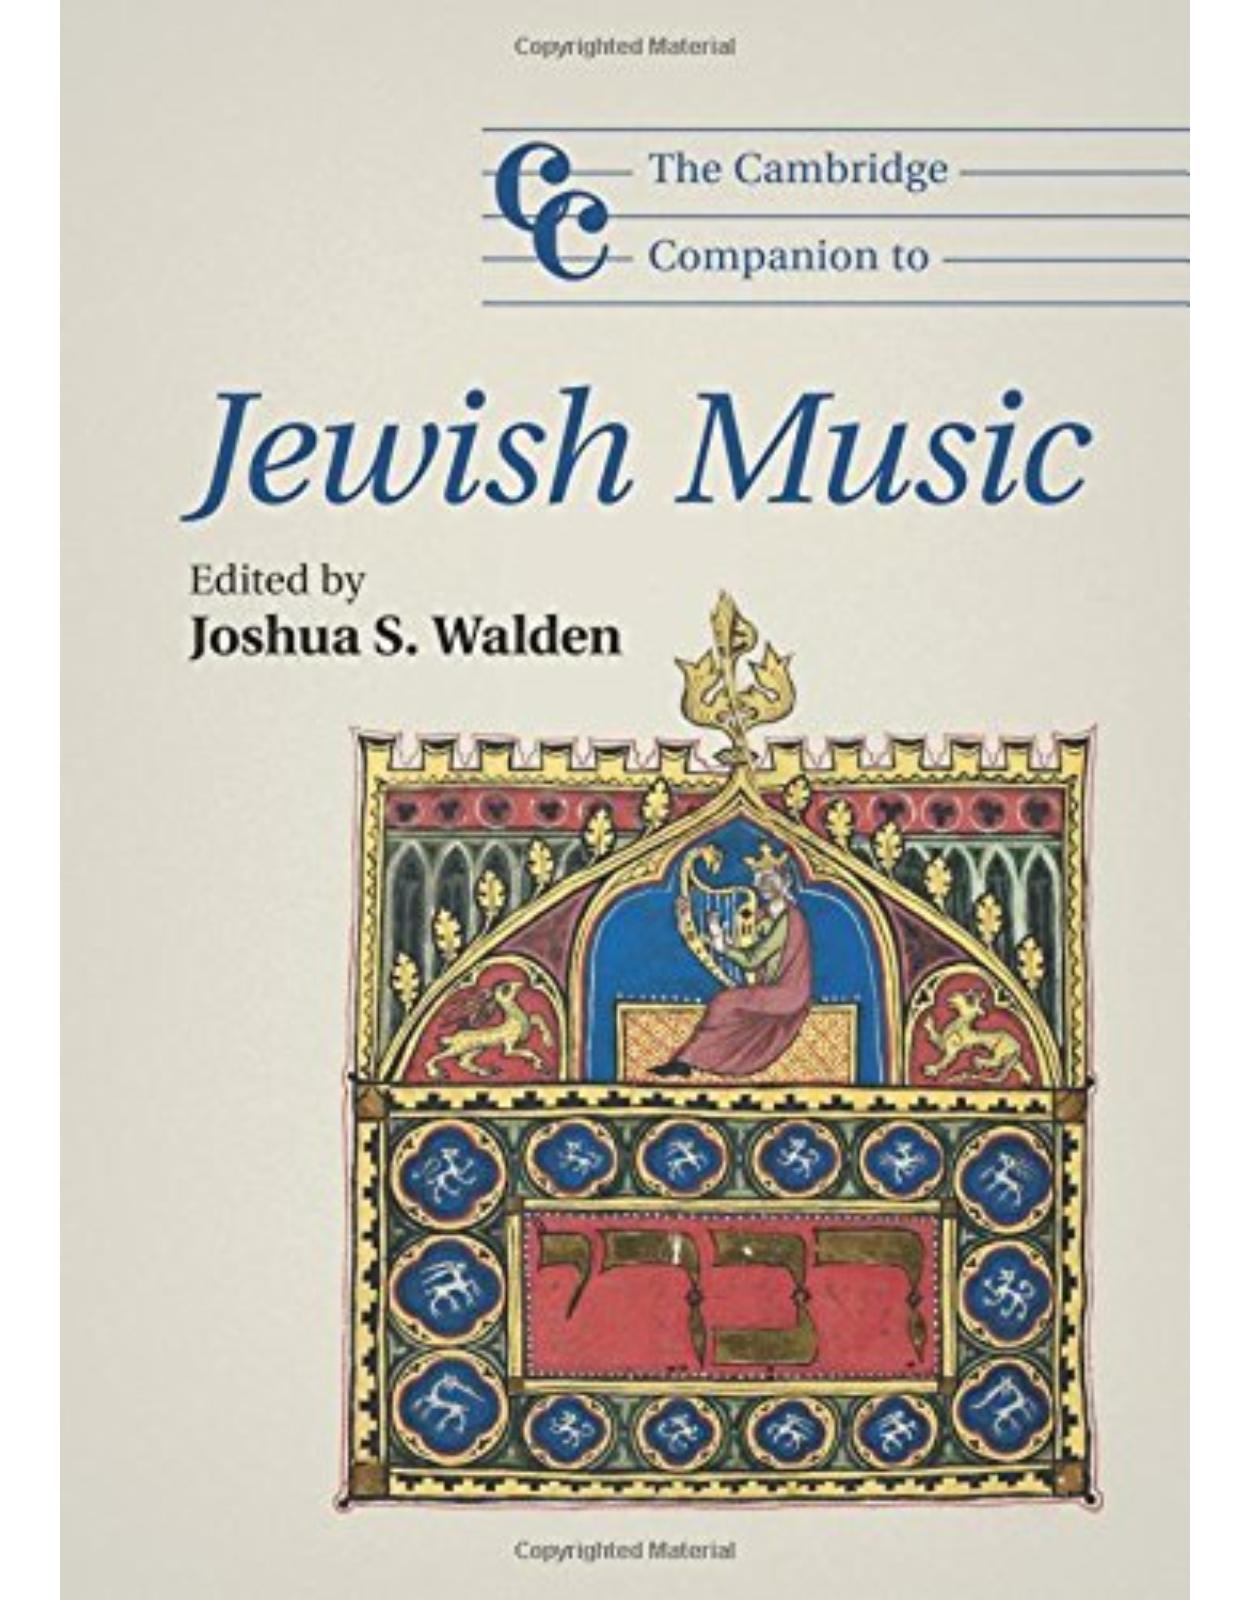 The Cambridge Companion to Jewish Music (Cambridge Companions to Music)